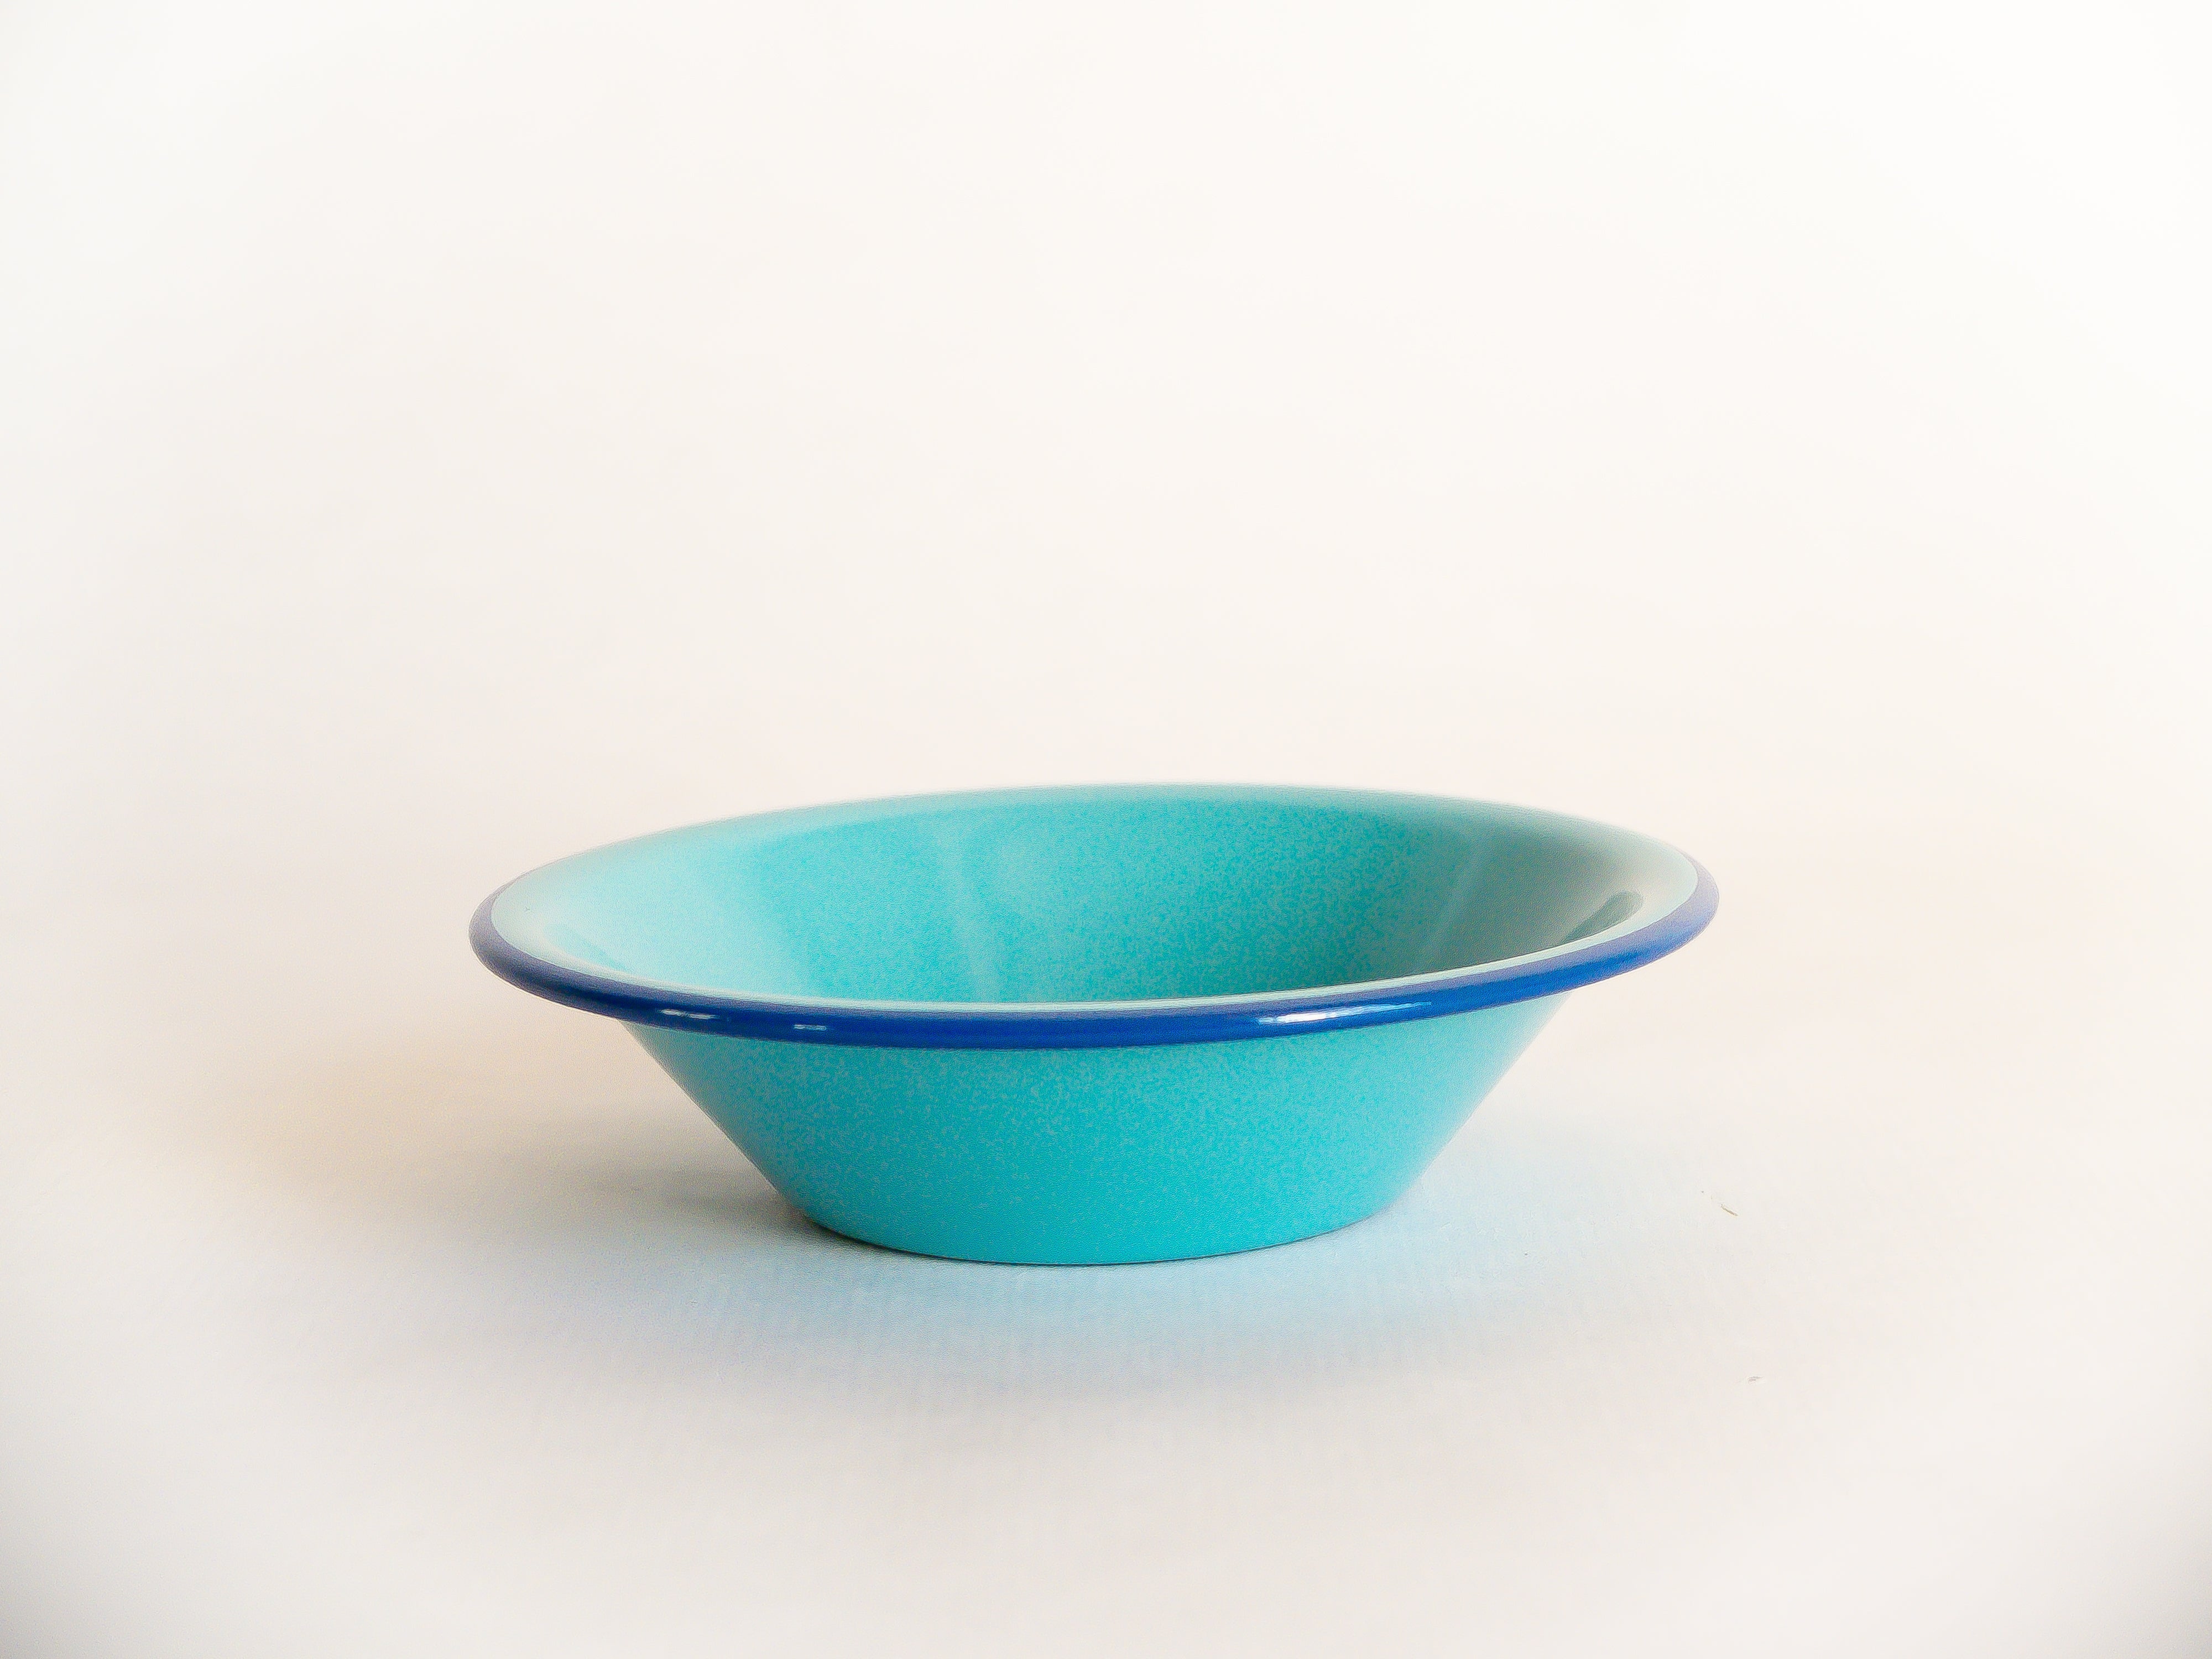 Petit bol en métal émaillé incassable turquoise à rebord bleu foncé. Collection de vaisselle nomade, à emmener partout